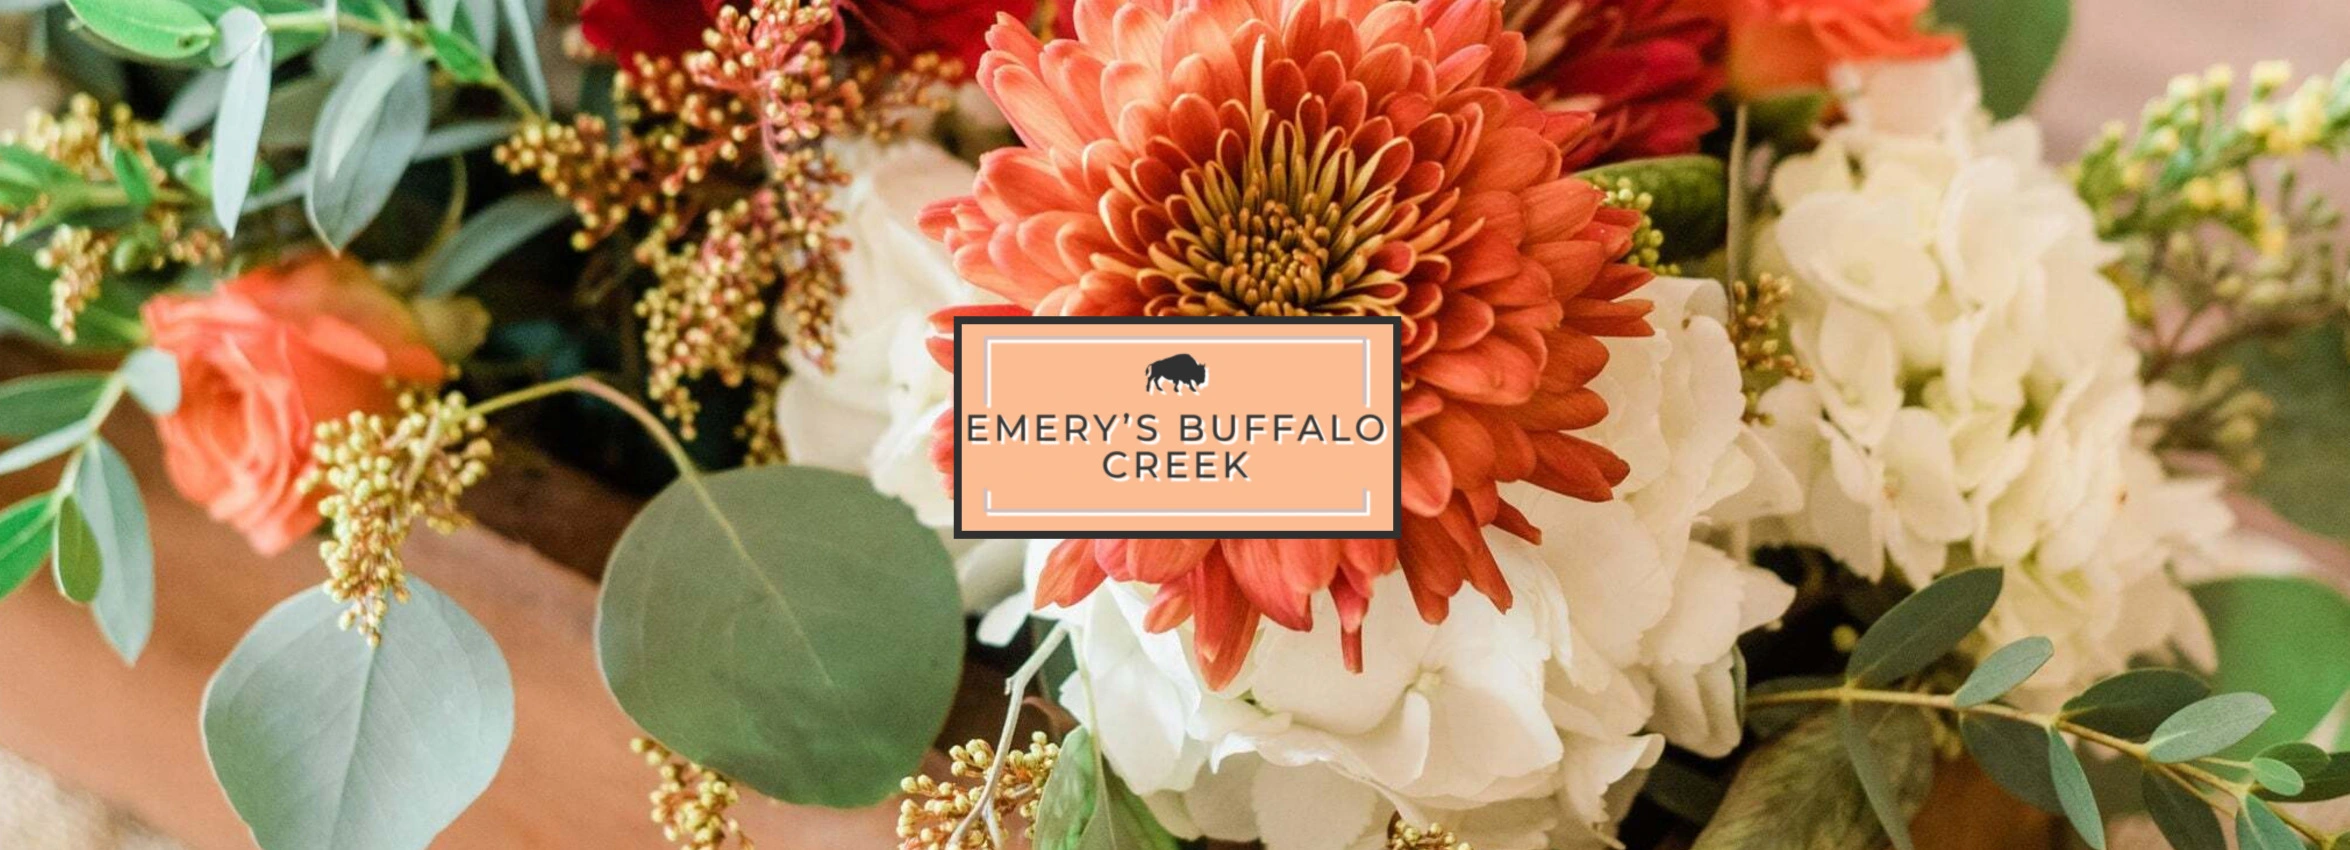 Emerys-Buffalo-Creek_Desktop_ET